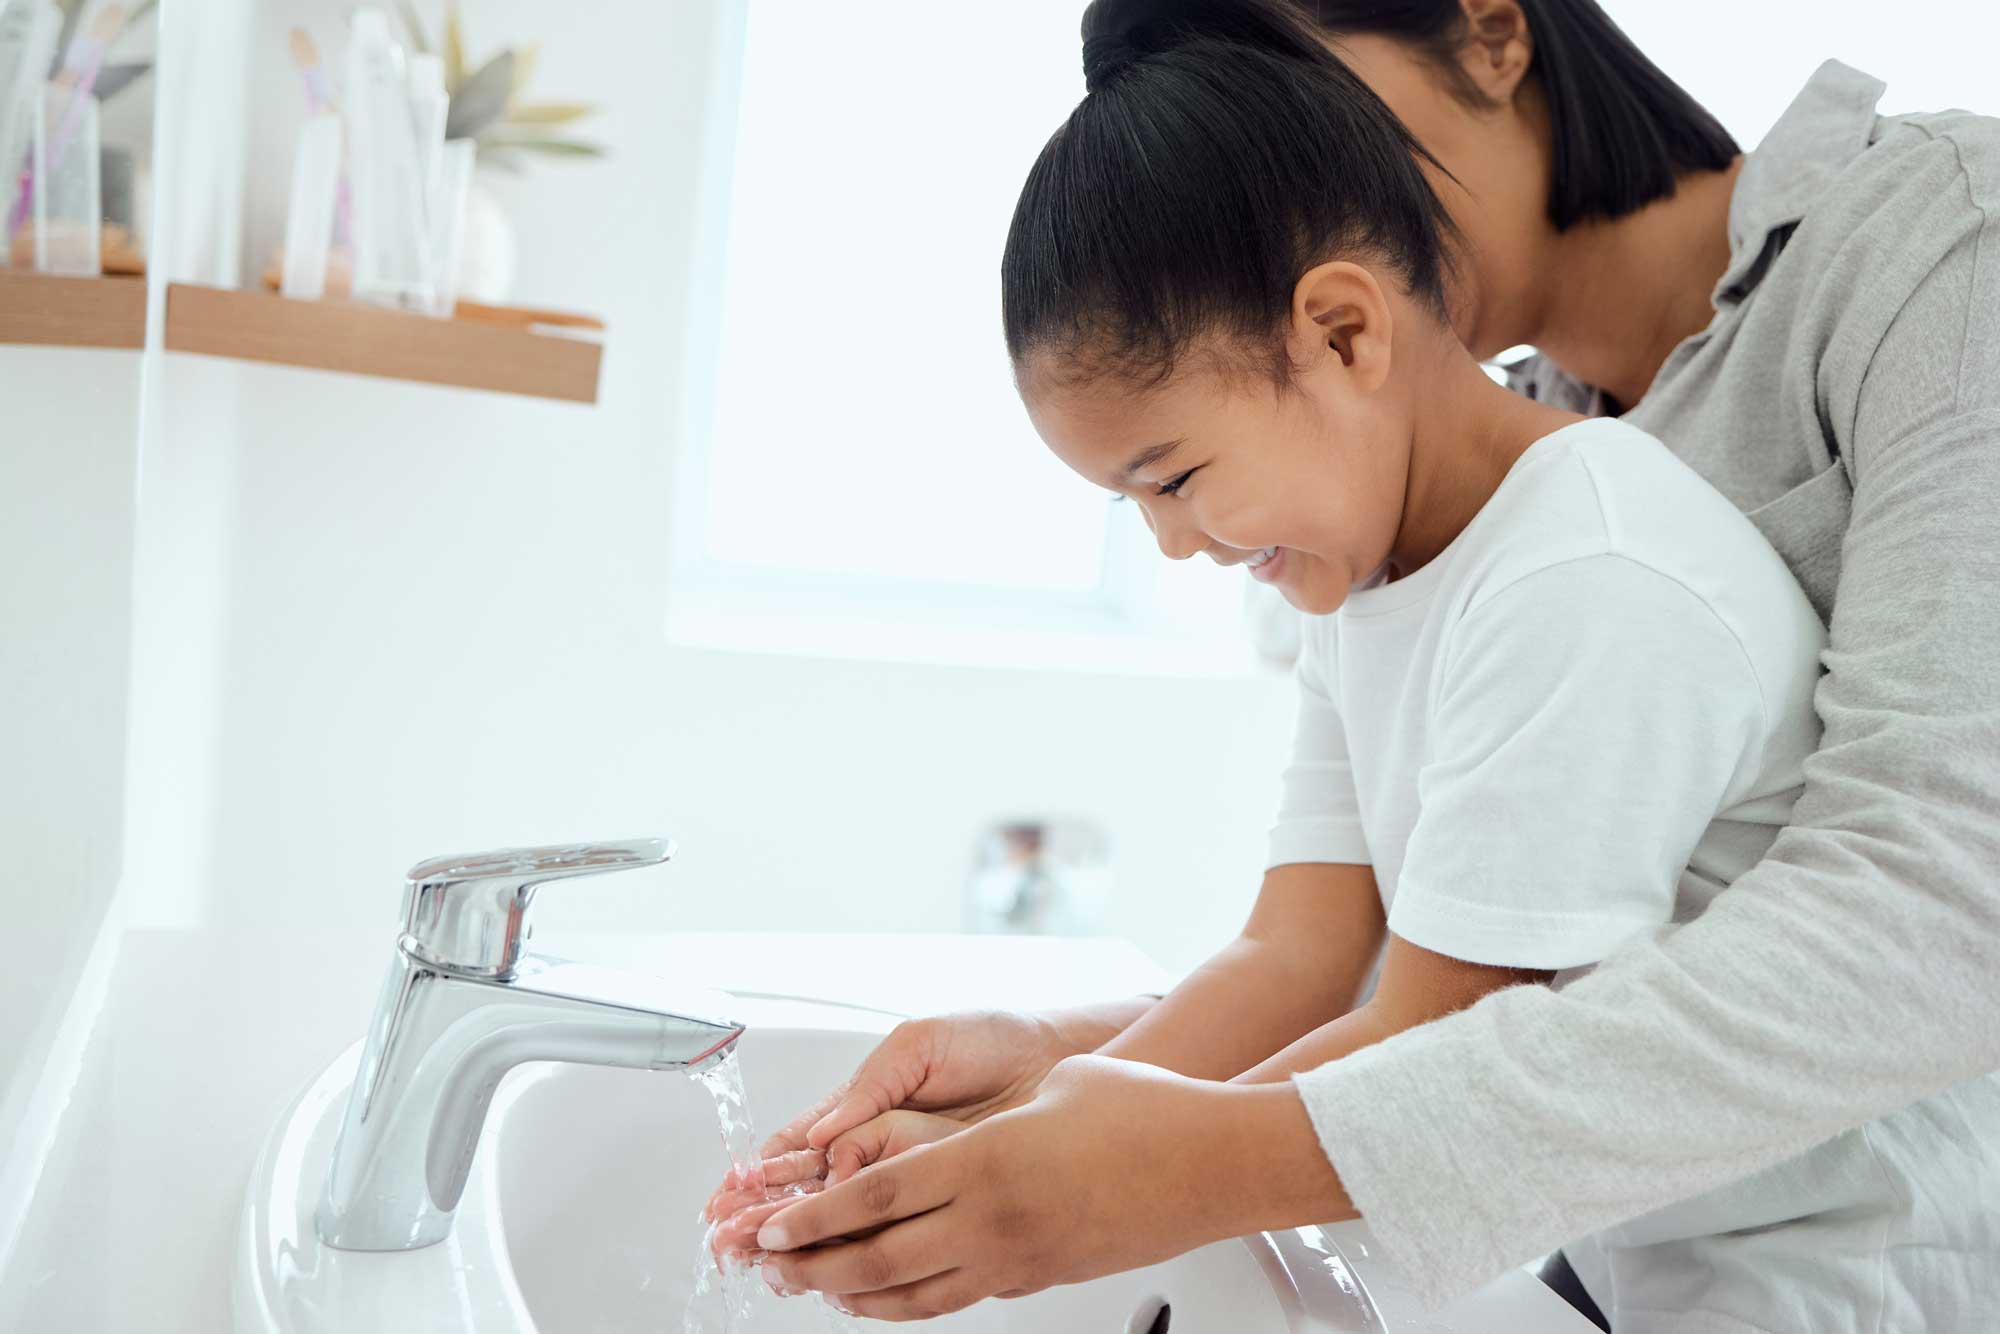 Parent washing child's hands in warm water